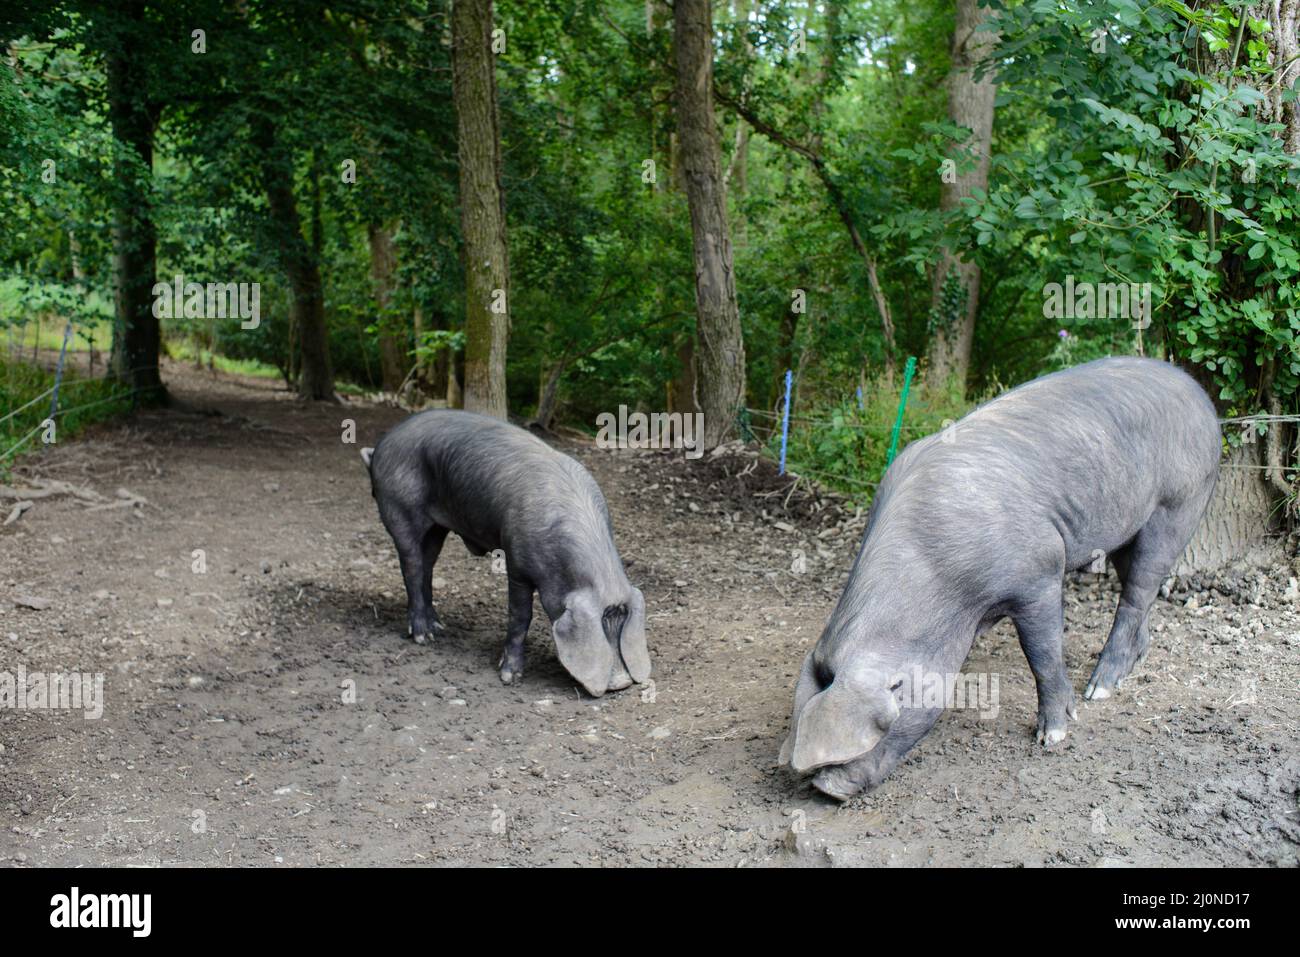 Reino Unido, Inglaterra, West Country, Devonshire. Gran Negro Británico de raza rara de cerdo con orejas de lop. El único cerdo negro de Gran Bretaña. Foto de stock